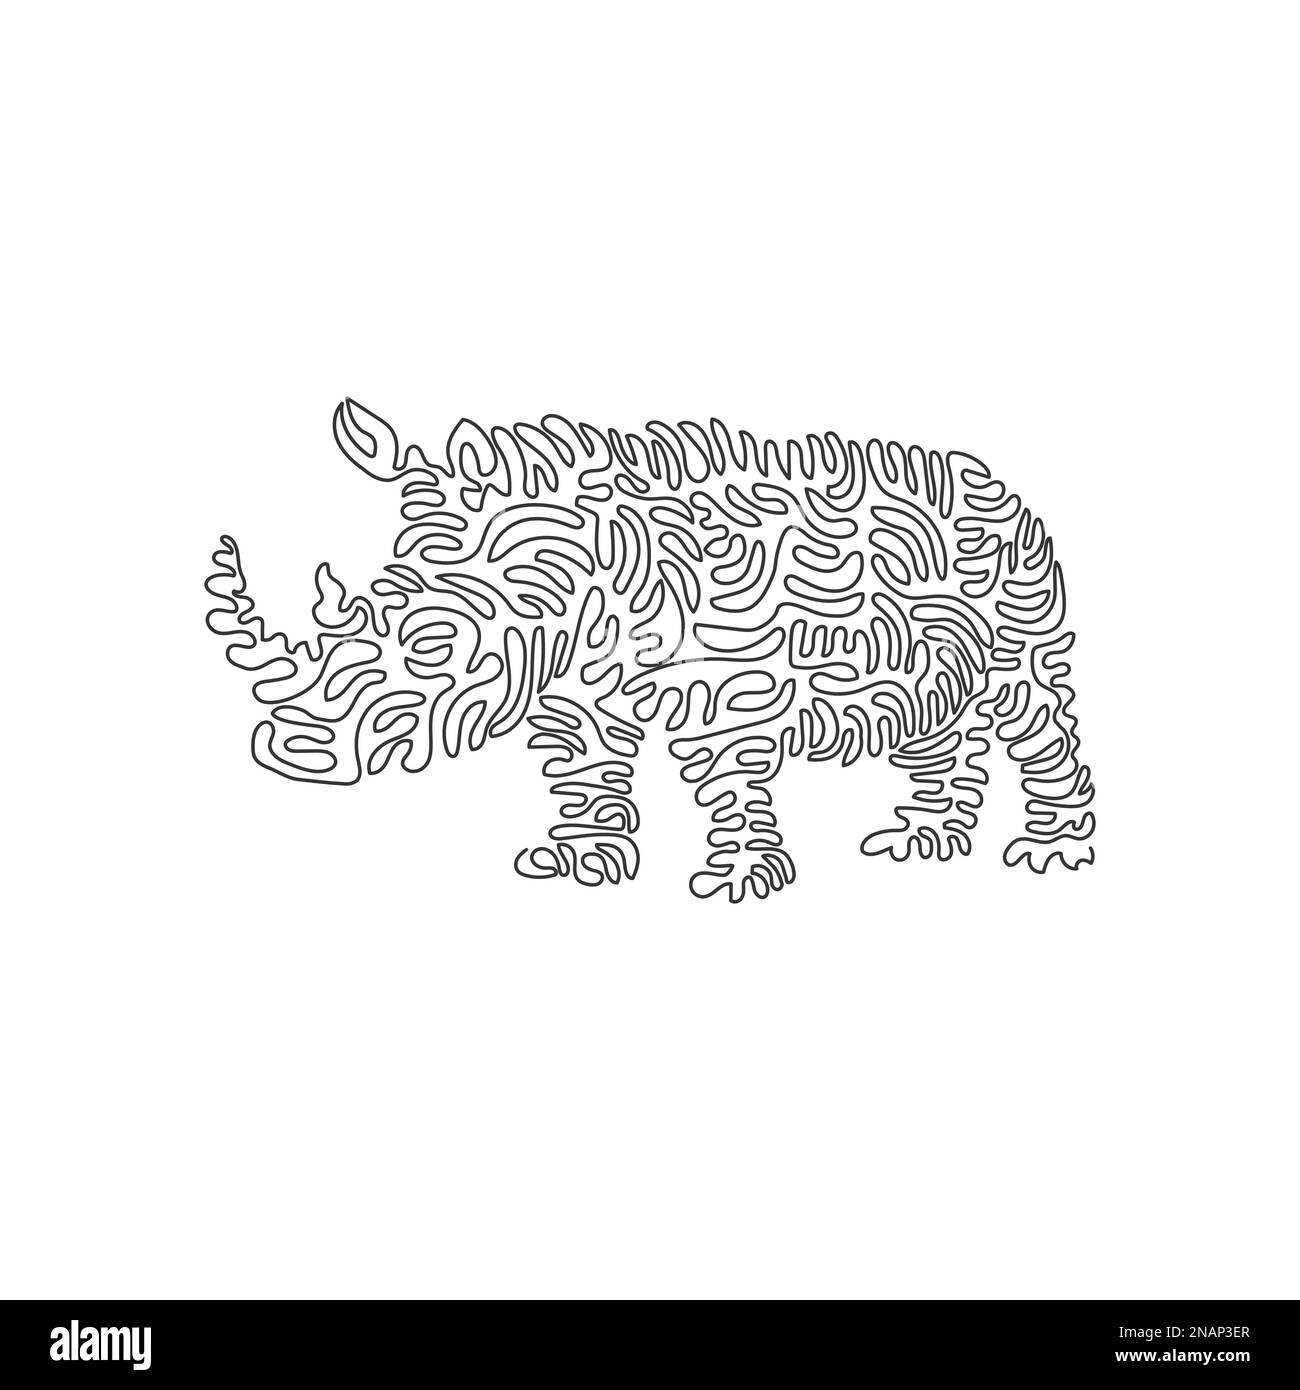 Disegno a linea continua a spirale singola di potenti rinoceronti. Disegno a linee continue stile di illustrazione vettoriale di un forte rinoceronte corporeo Illustrazione Vettoriale